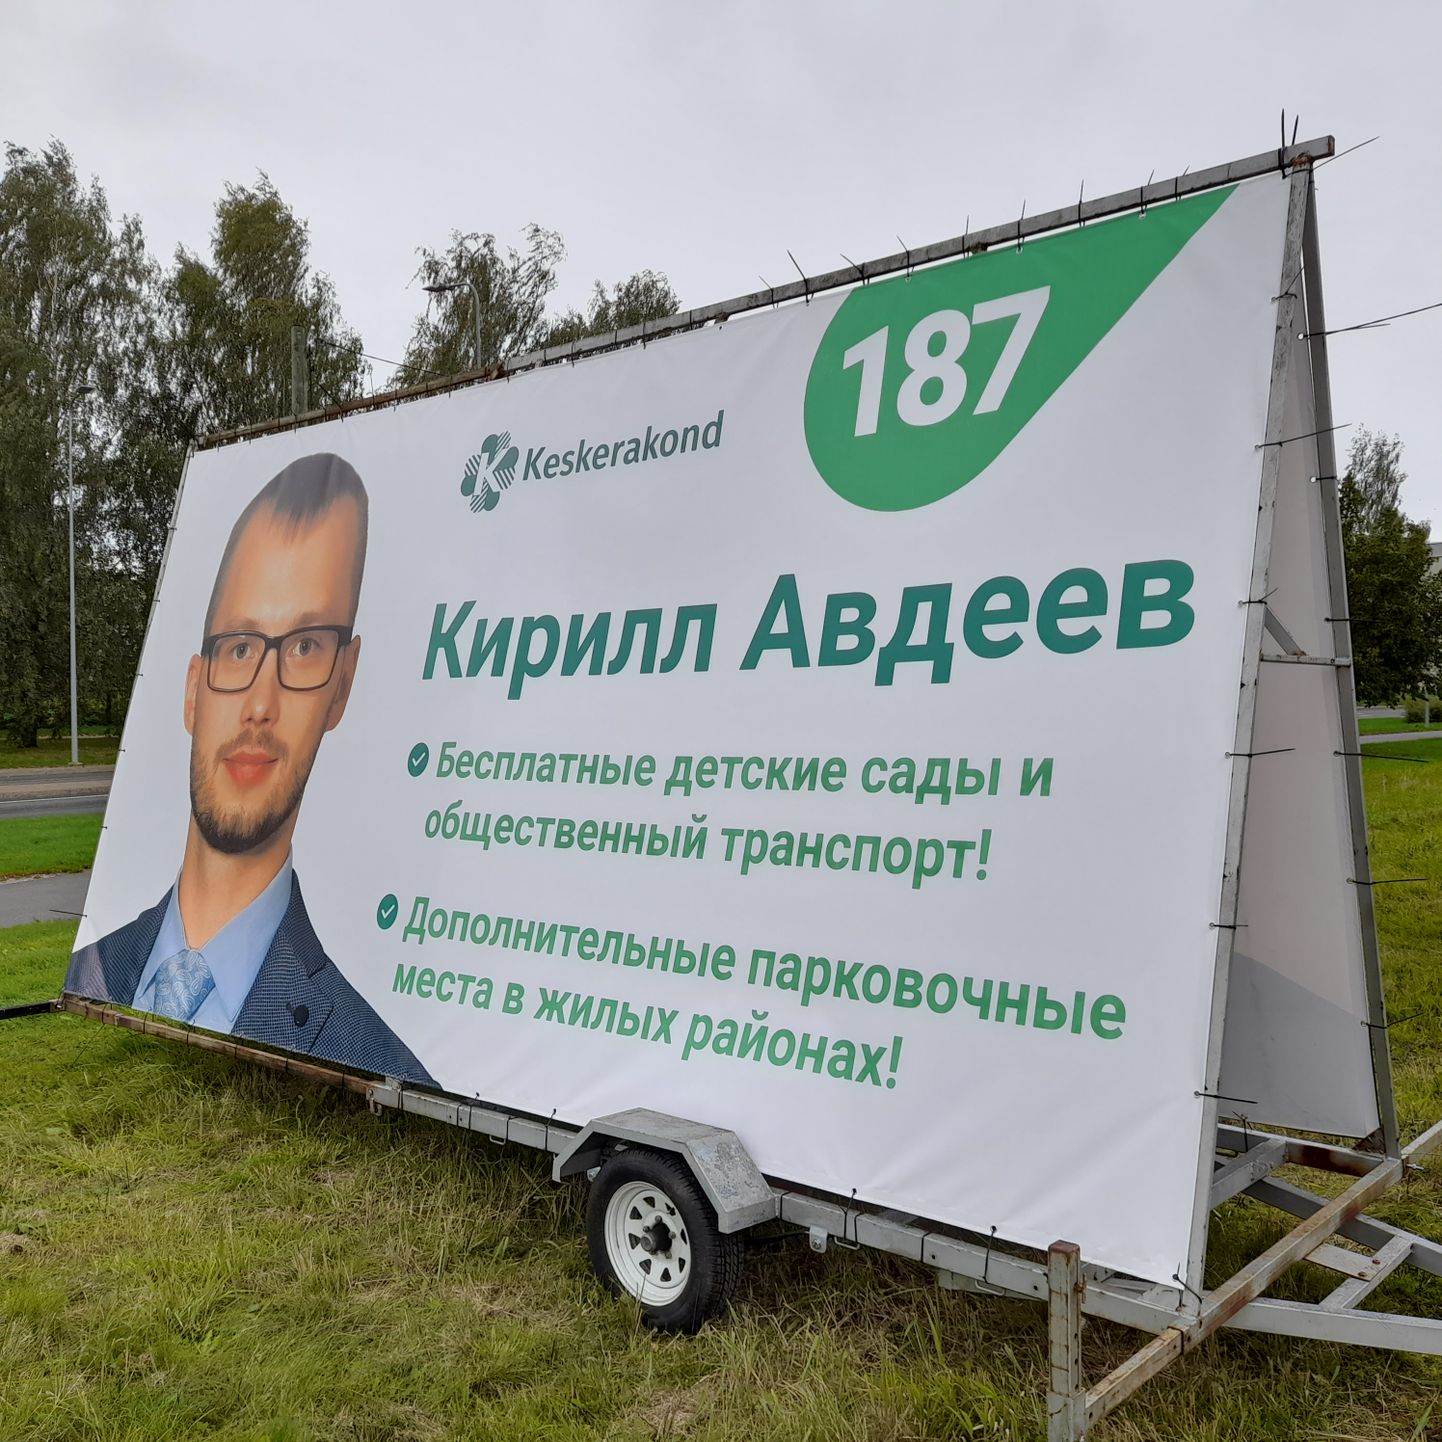 Kirill Avdejevi valimisreklaam ei vasta seadustele.